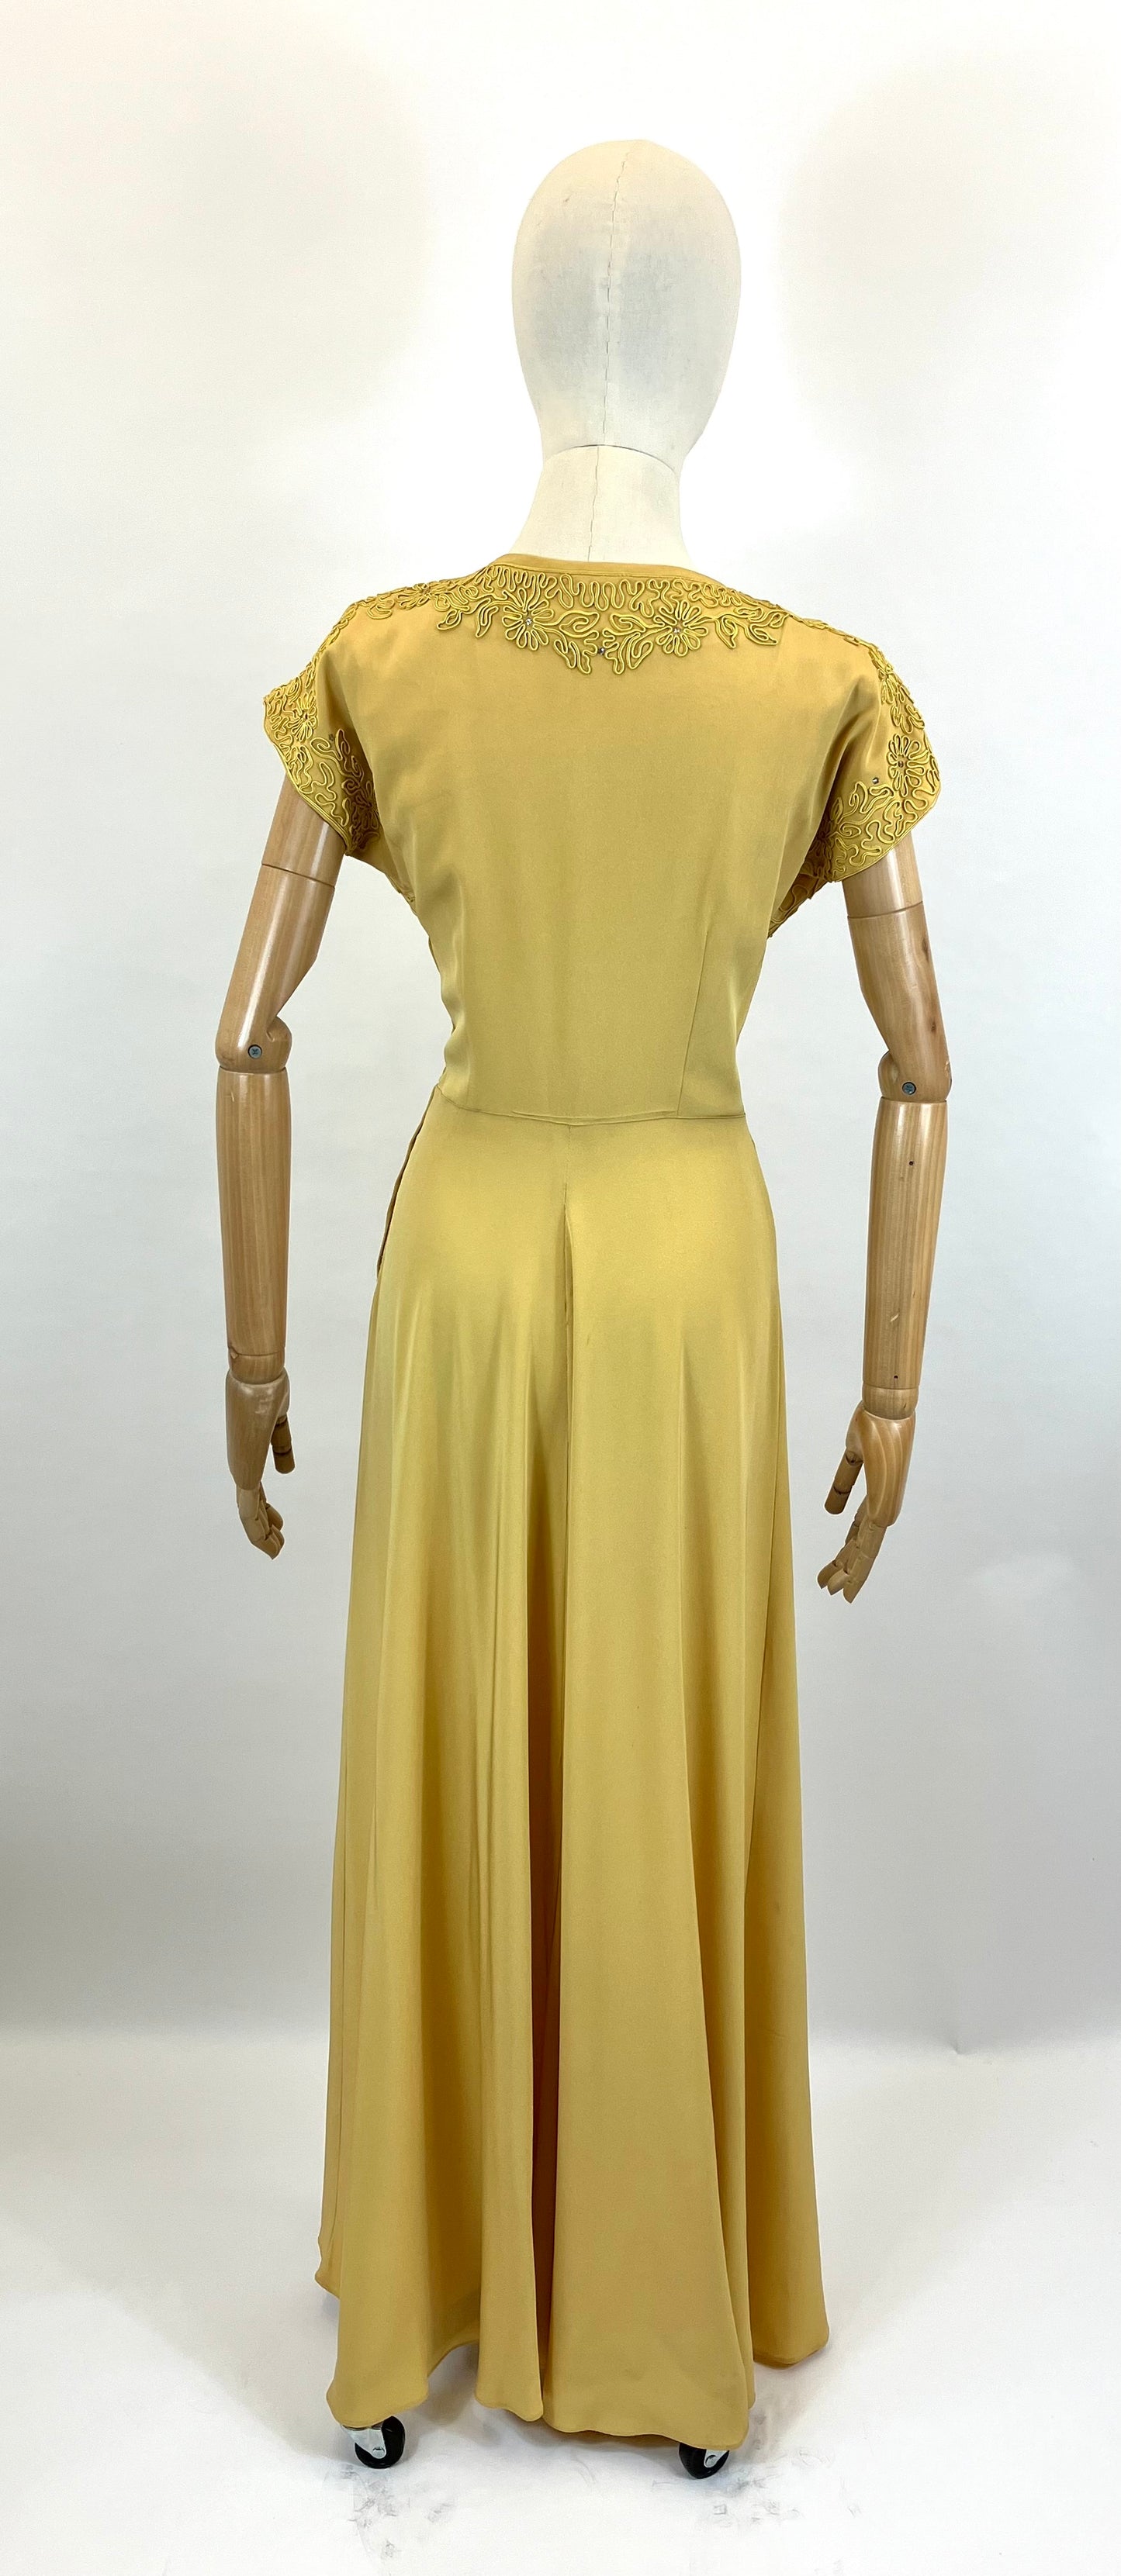 Original 1940’s Fabulous Evening Gown - Soft Mustard